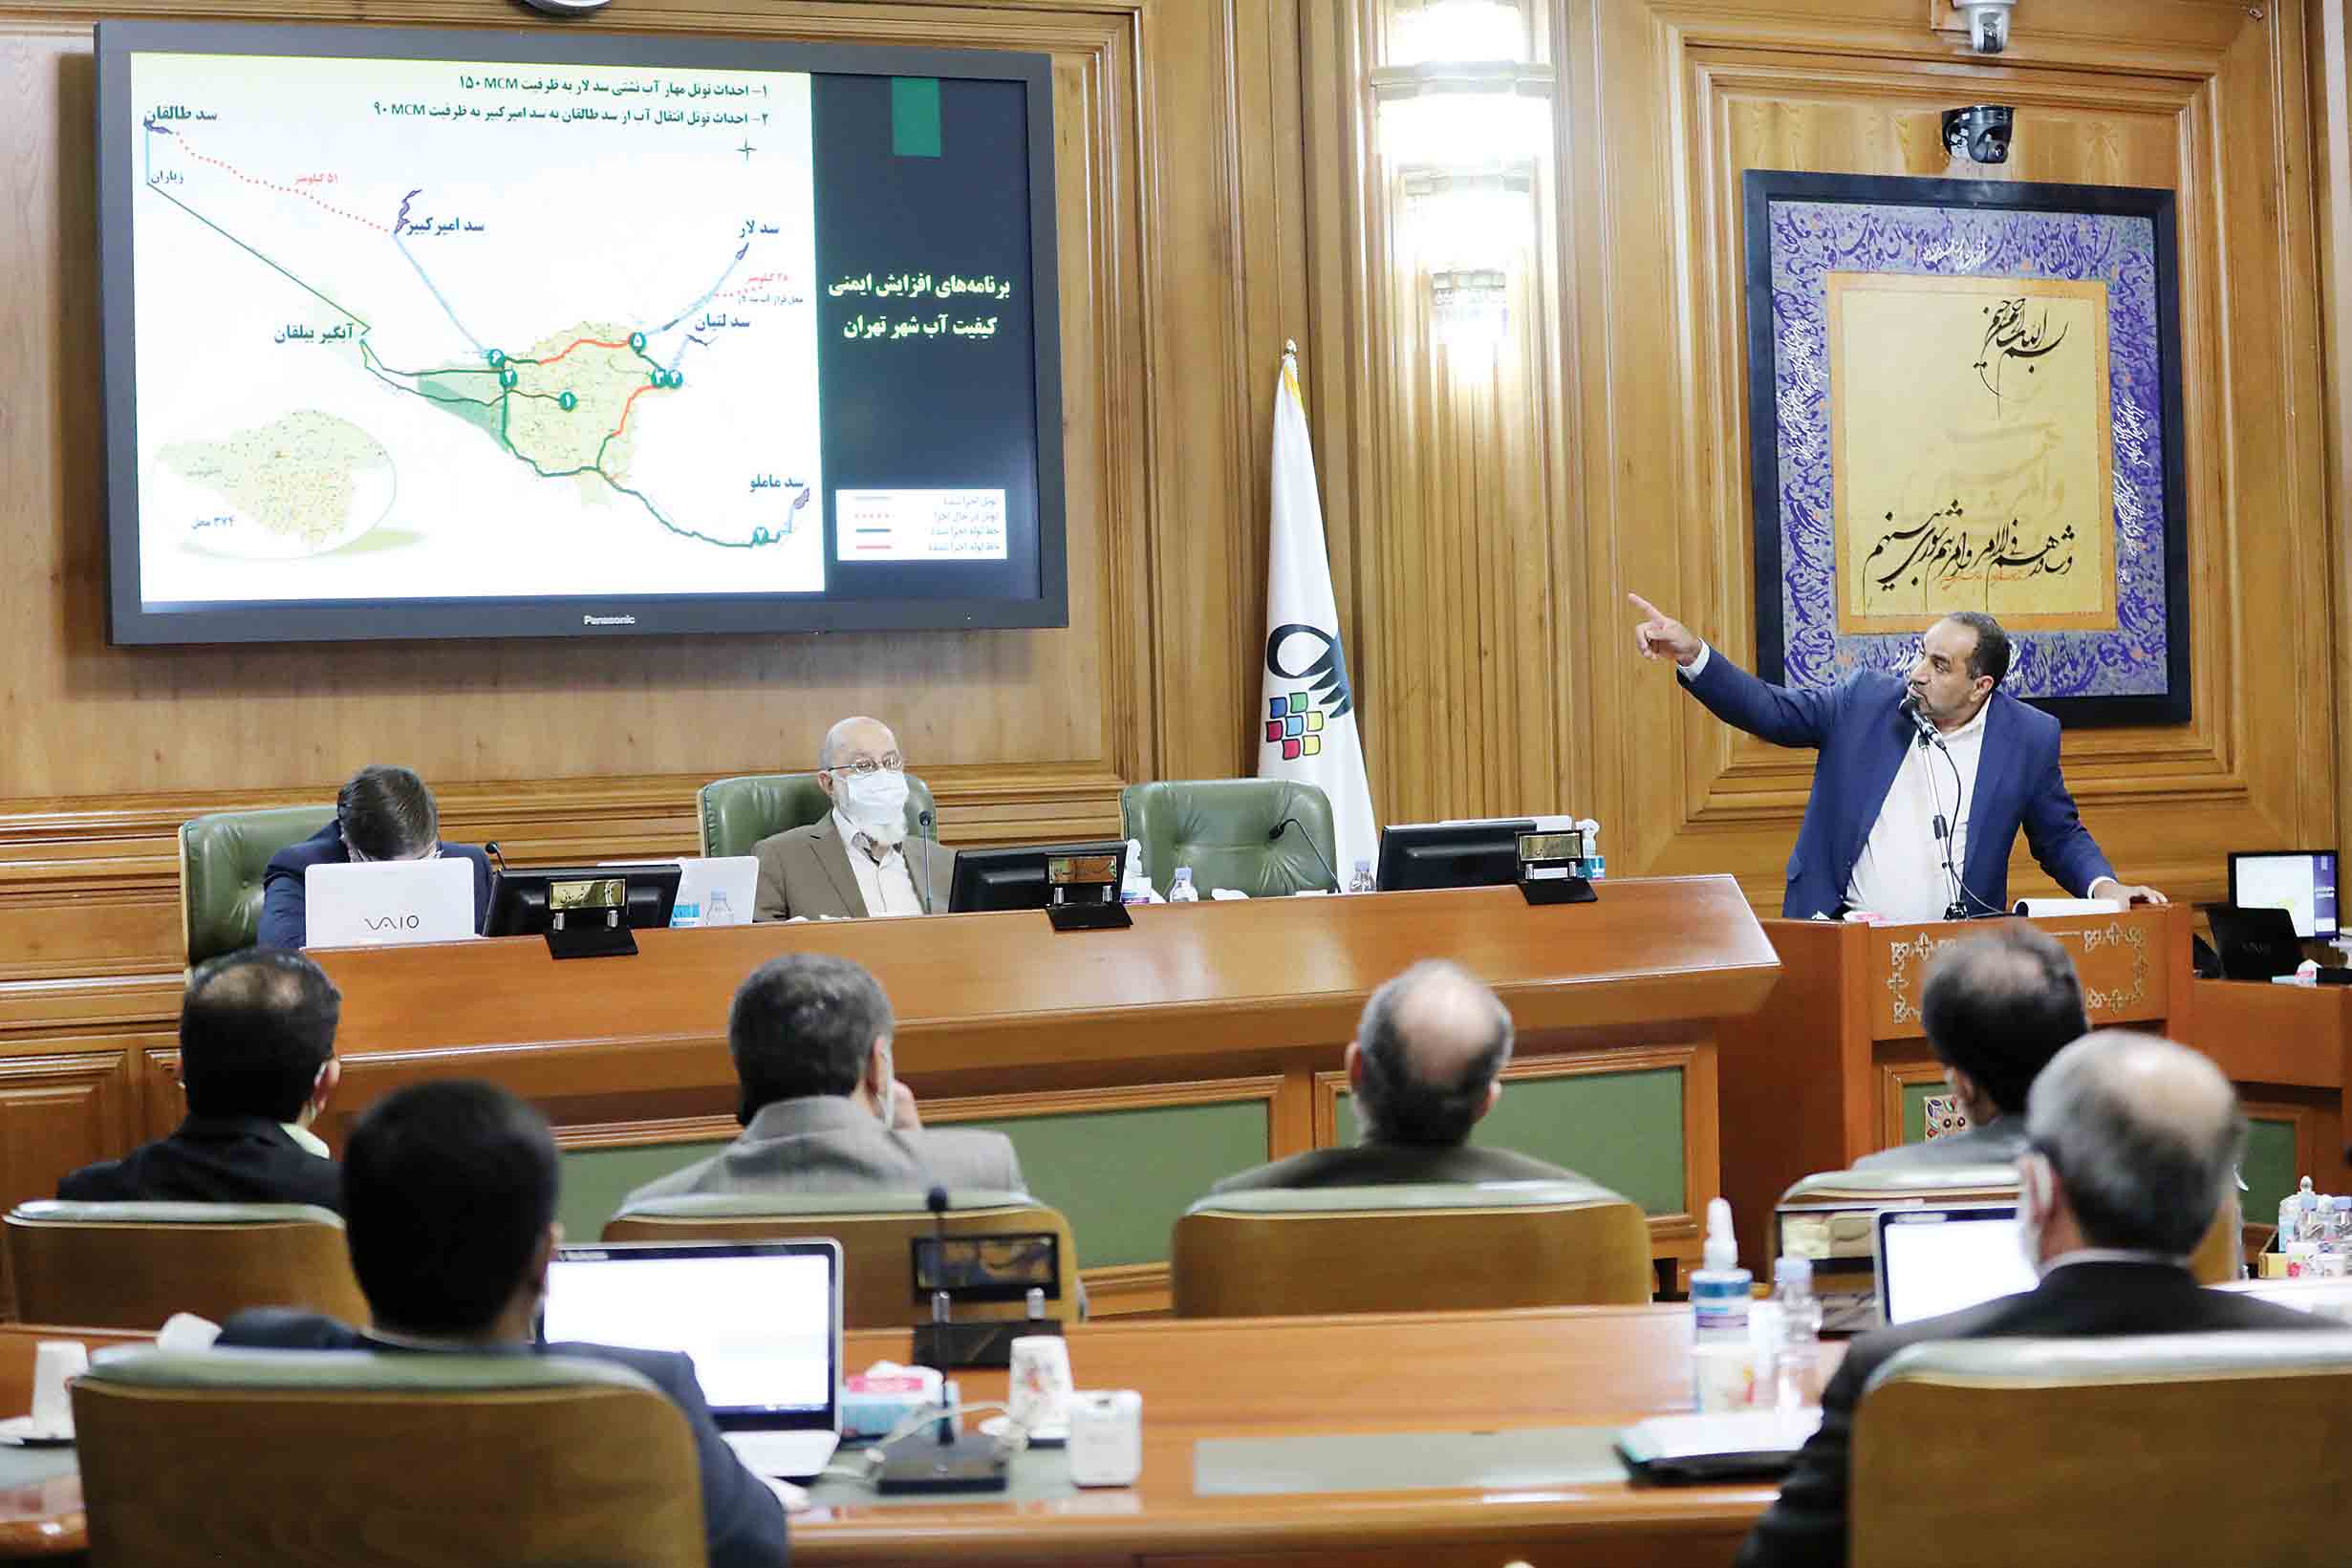 مدیرعامل شرکت آب و فاضلاب استان تهران با حضور در صحن پارلمان شهری گزارشی از وضعیت سدها و مخازن آبی پایتخت ارائه داد